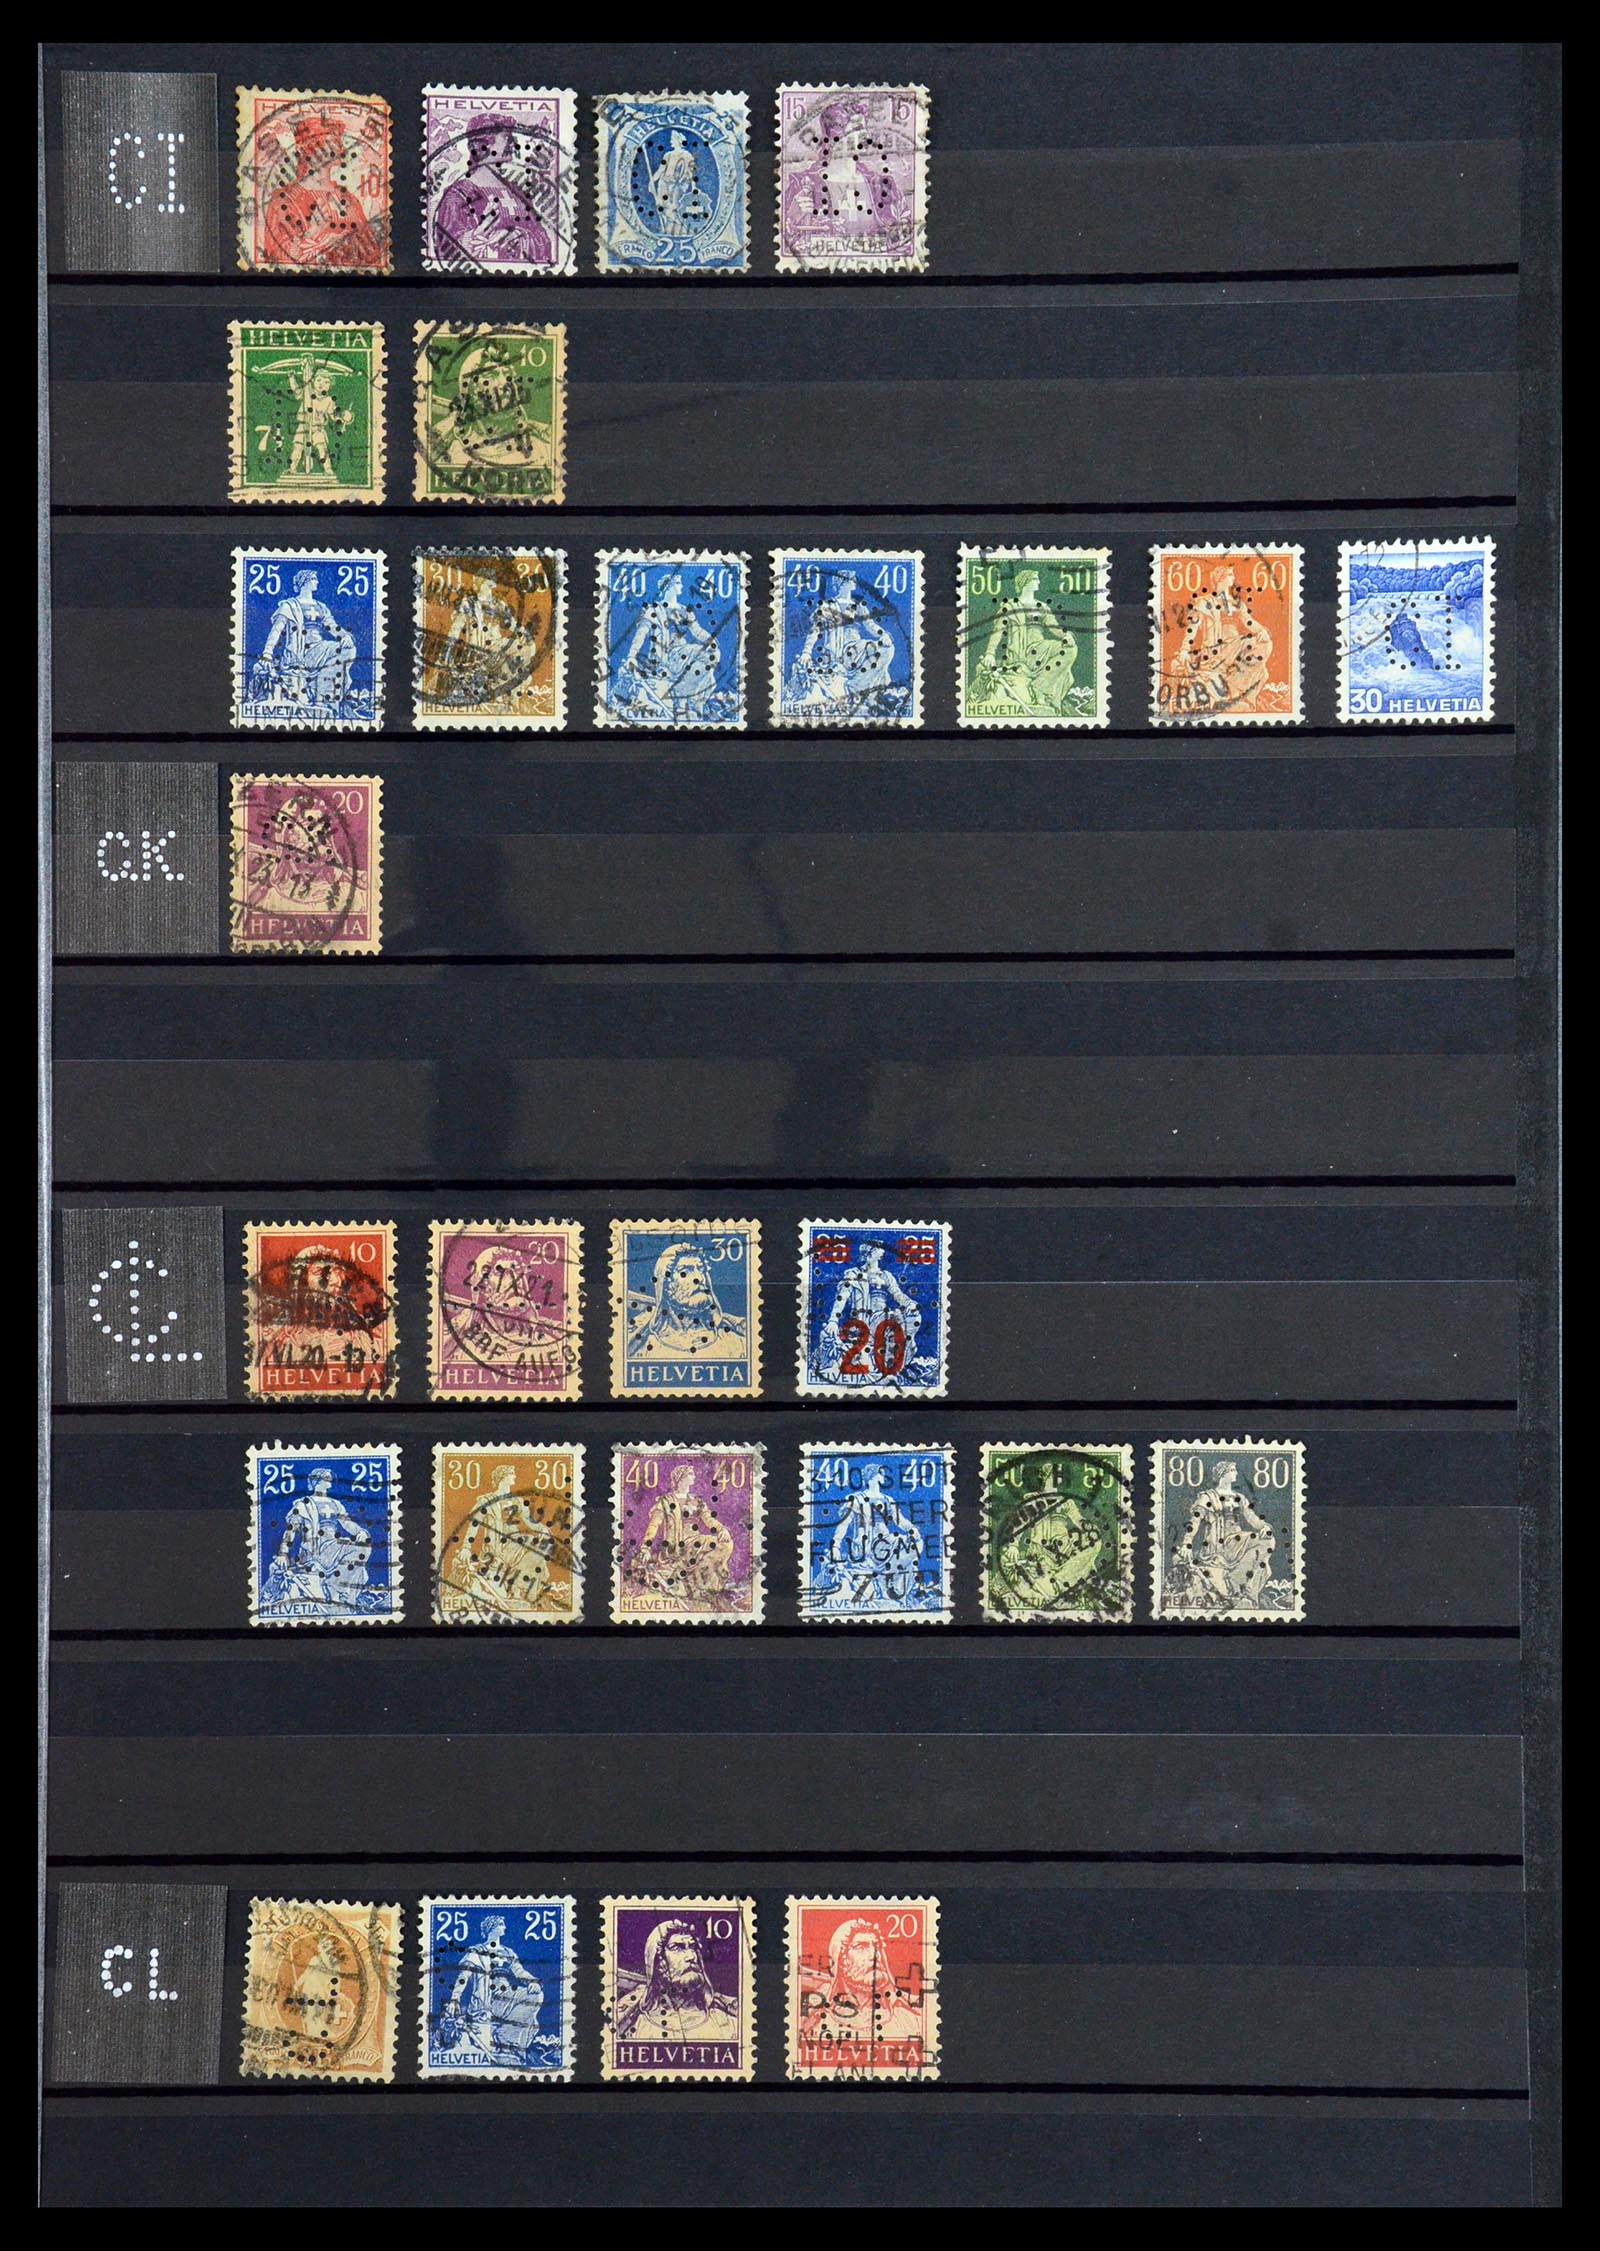 36372 011 - Stamp collection 36372 Switzerland perfins 1880-1960.